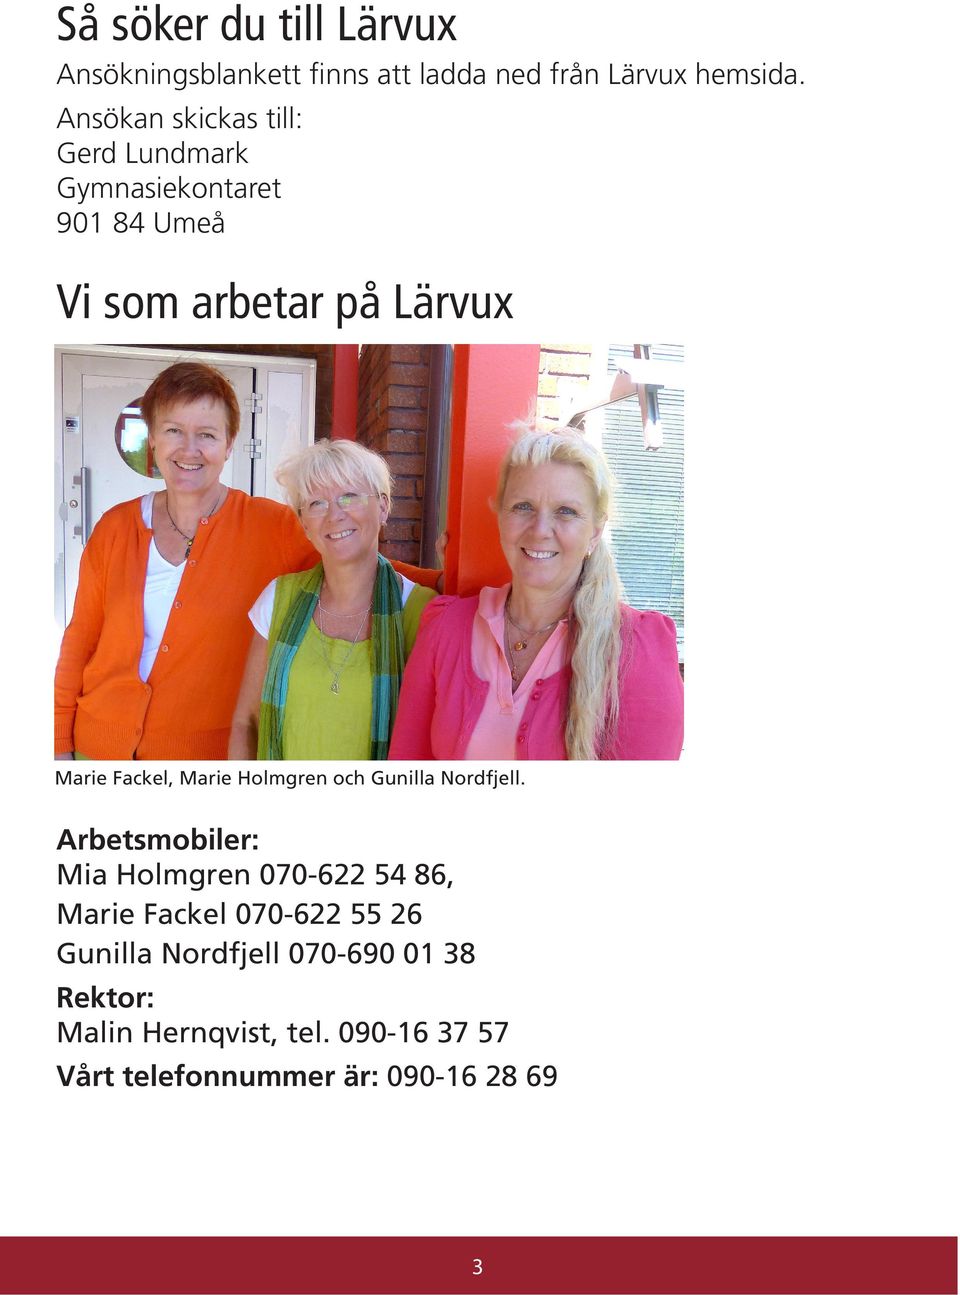 Fackel, Marie Holmgren och Gunilla Nordfjell.